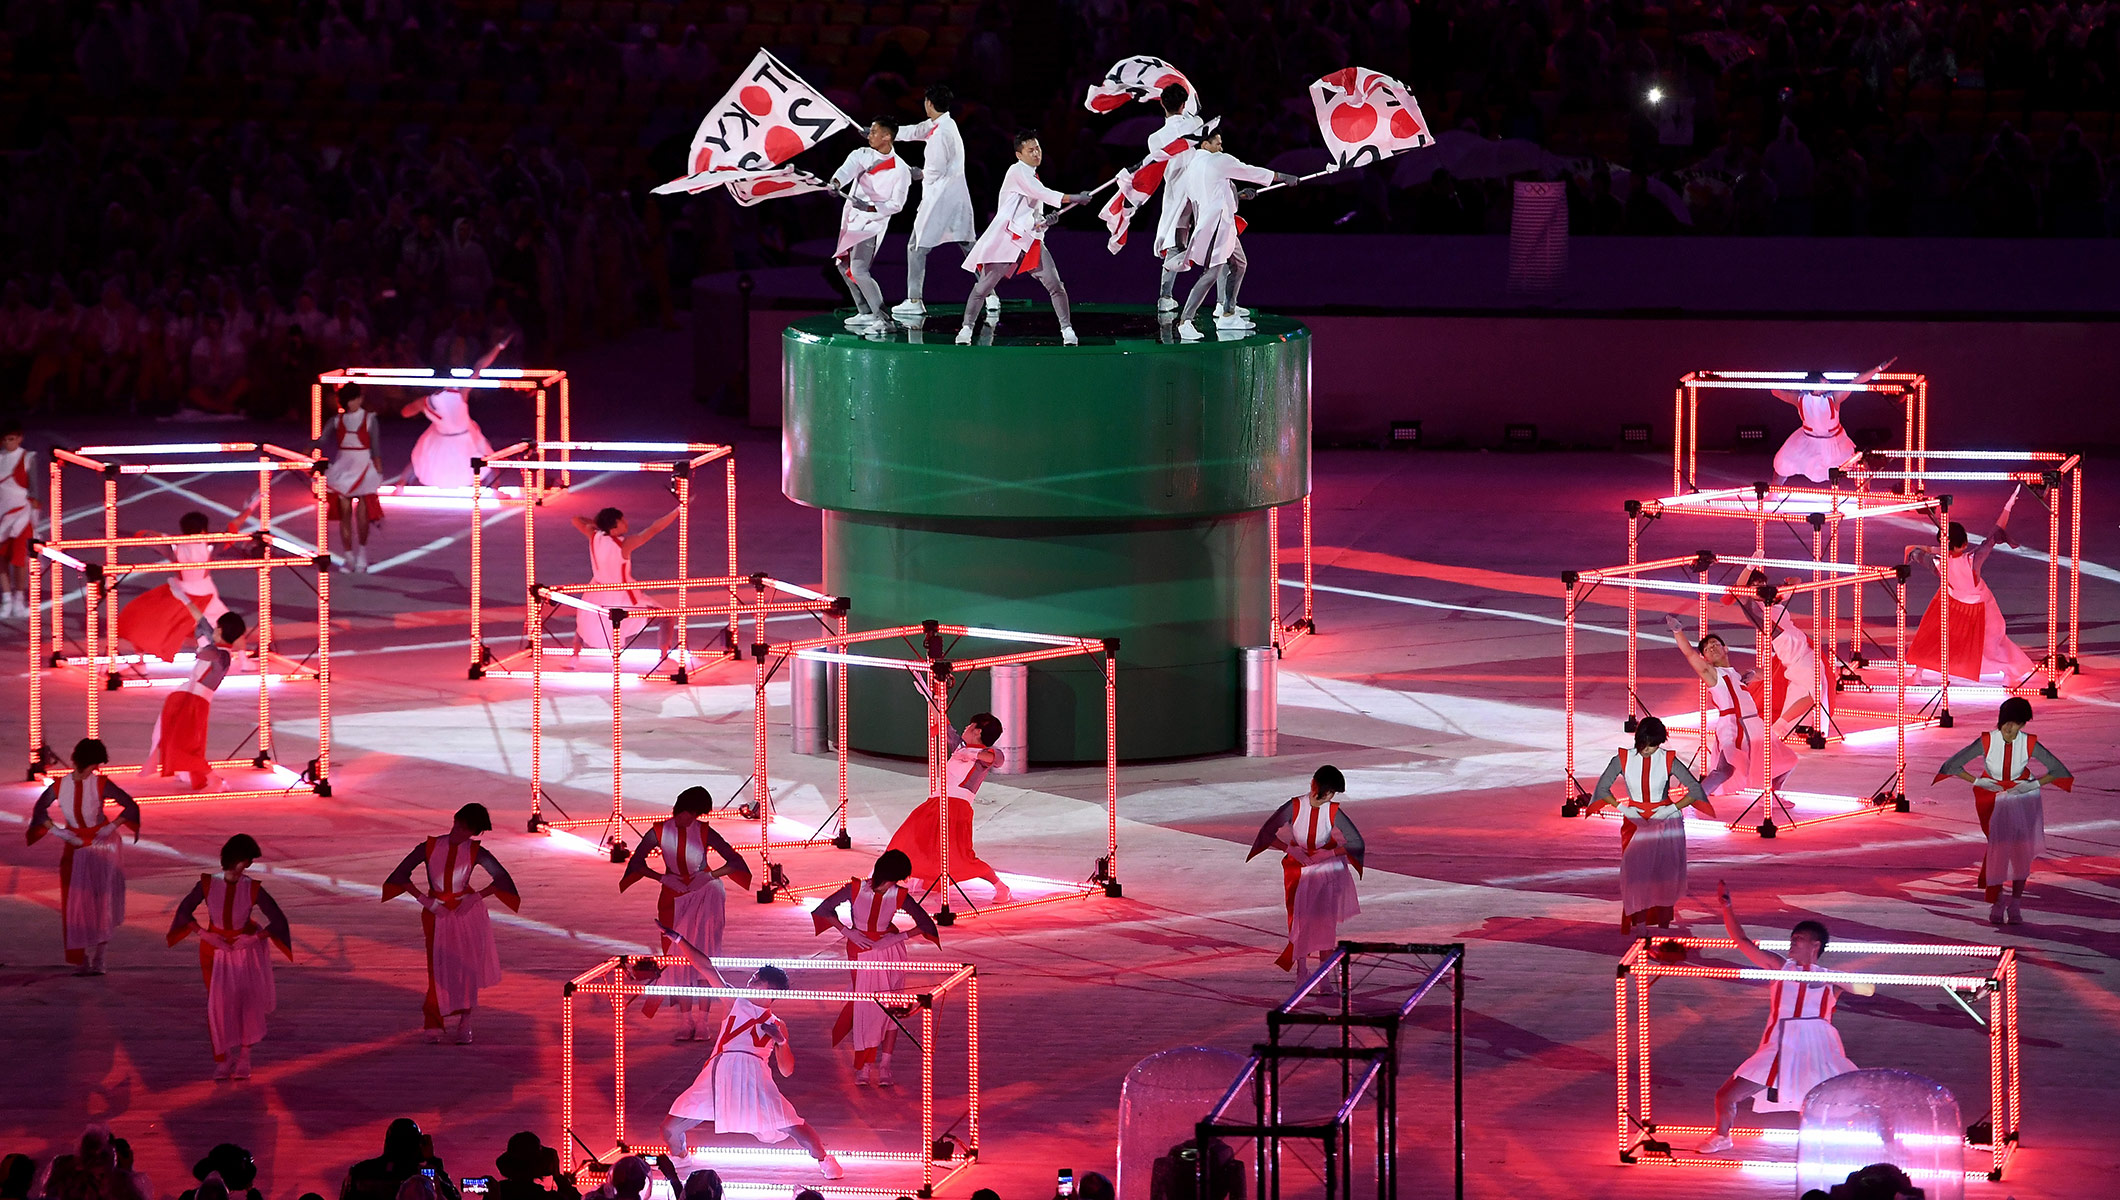 La promoción de Tokyo 2020 en Rio 2016